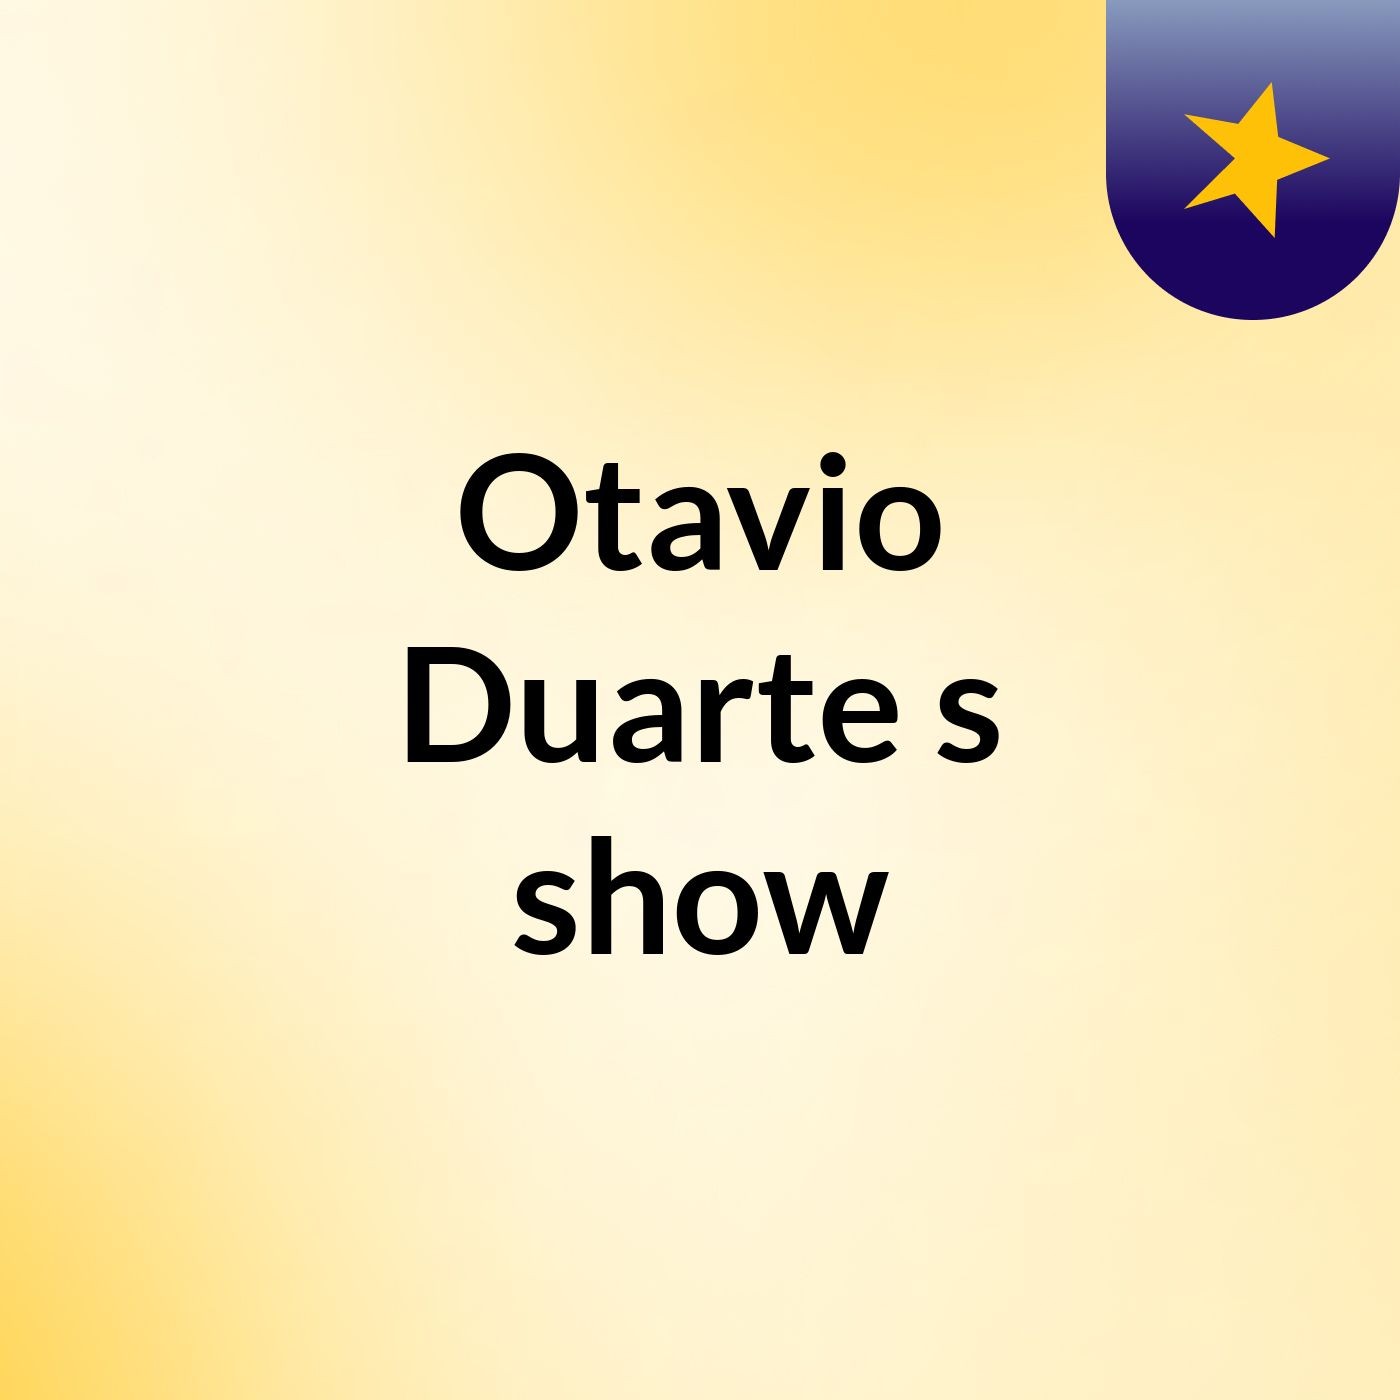 Otavio Duarte's show